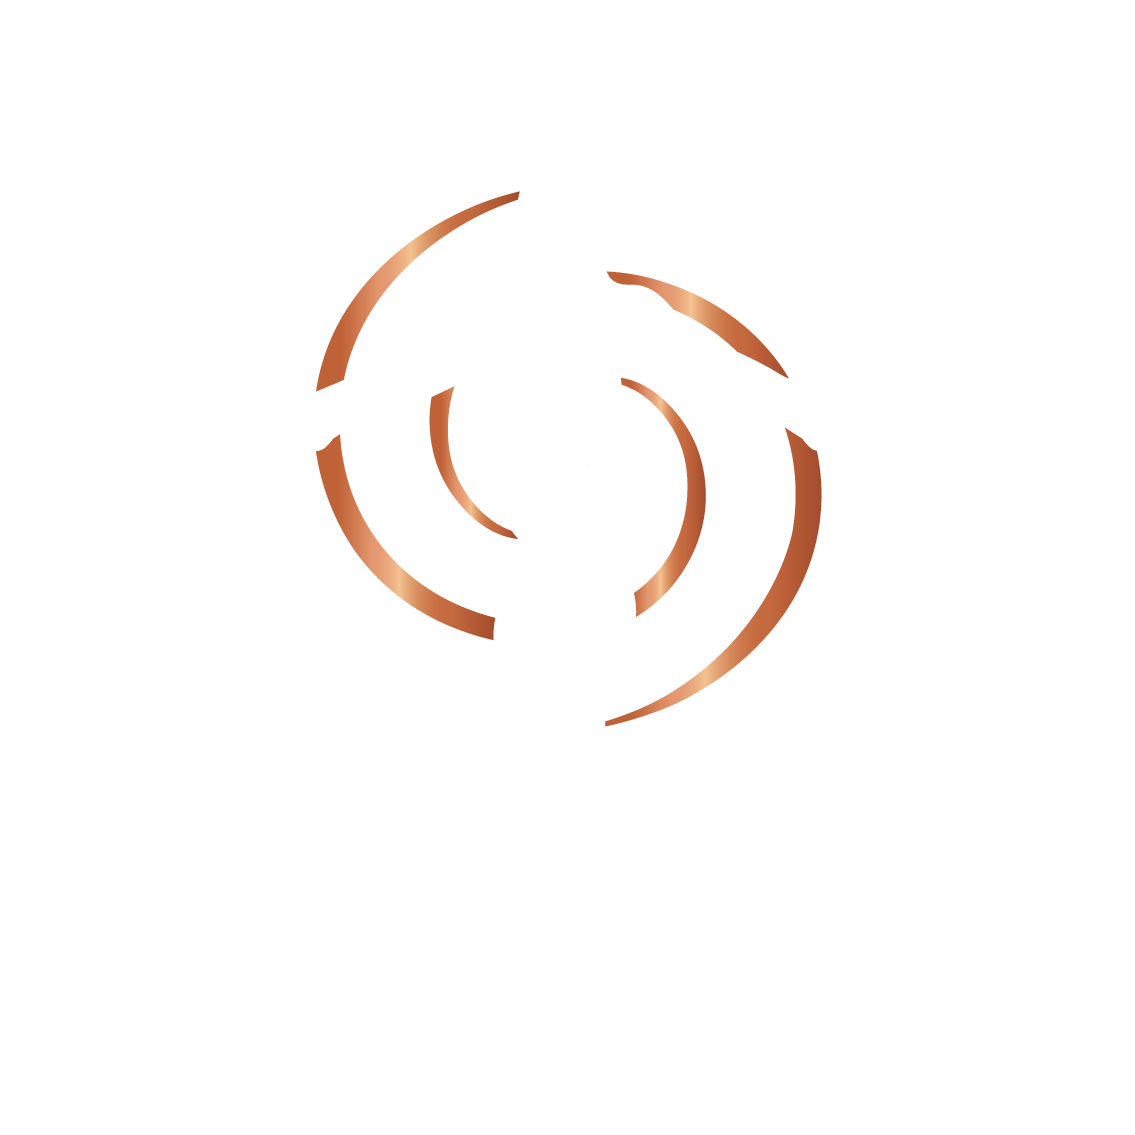 Ayus Wellness